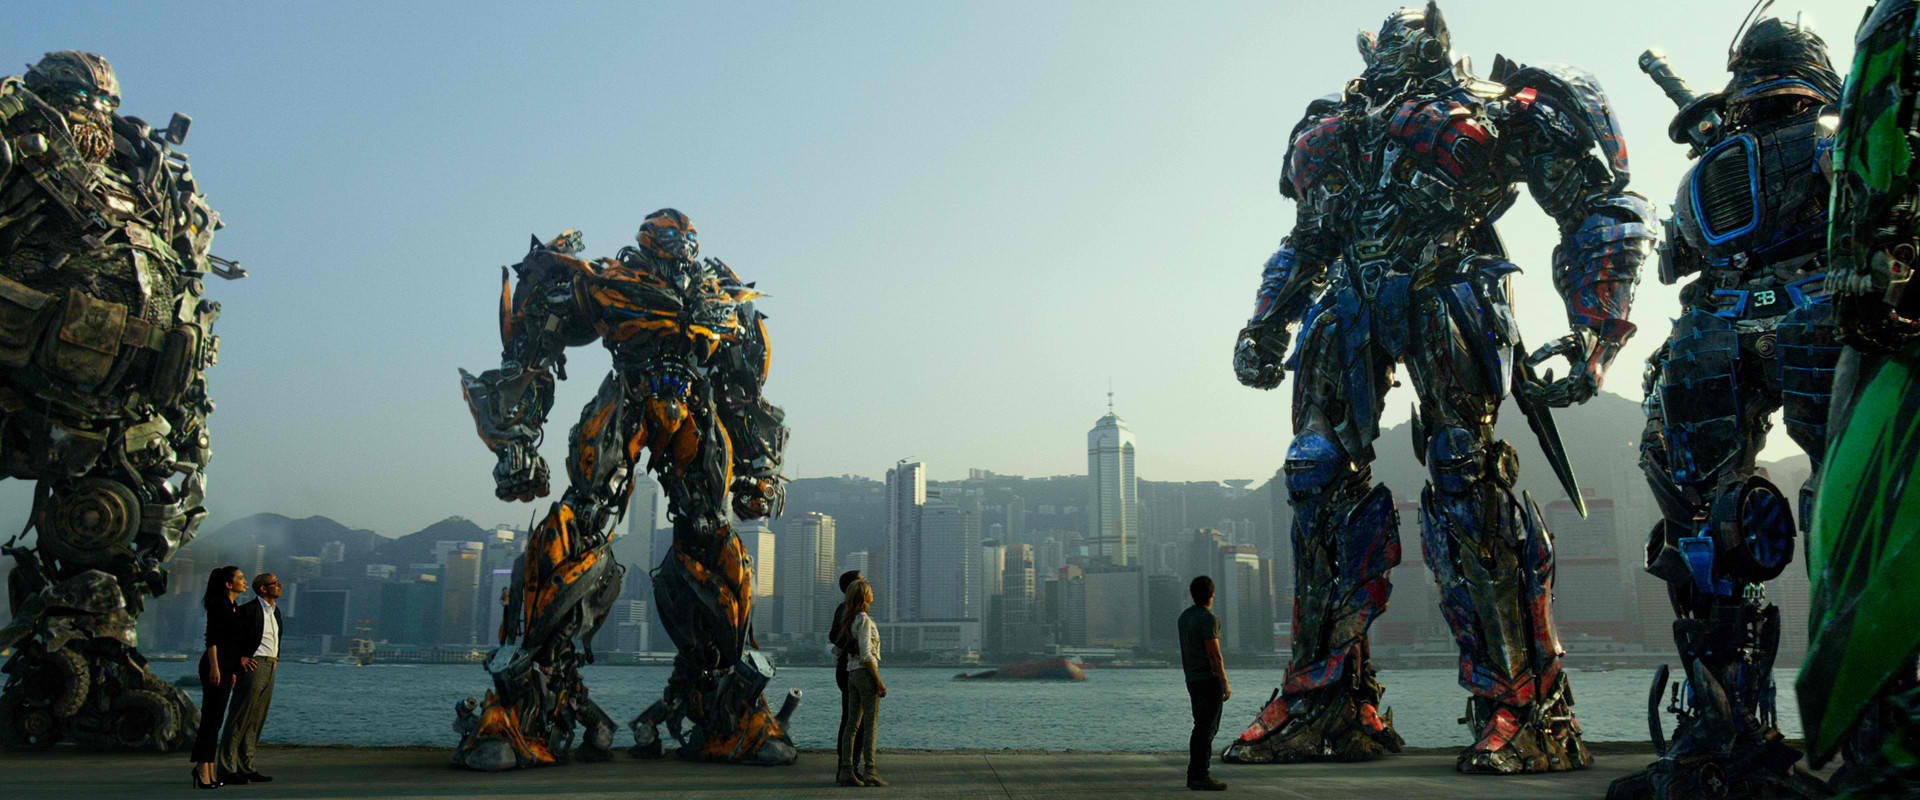 Dopo i primi tre capitoli annunciato Transformers 4, le prime indiscrezioni sul cast